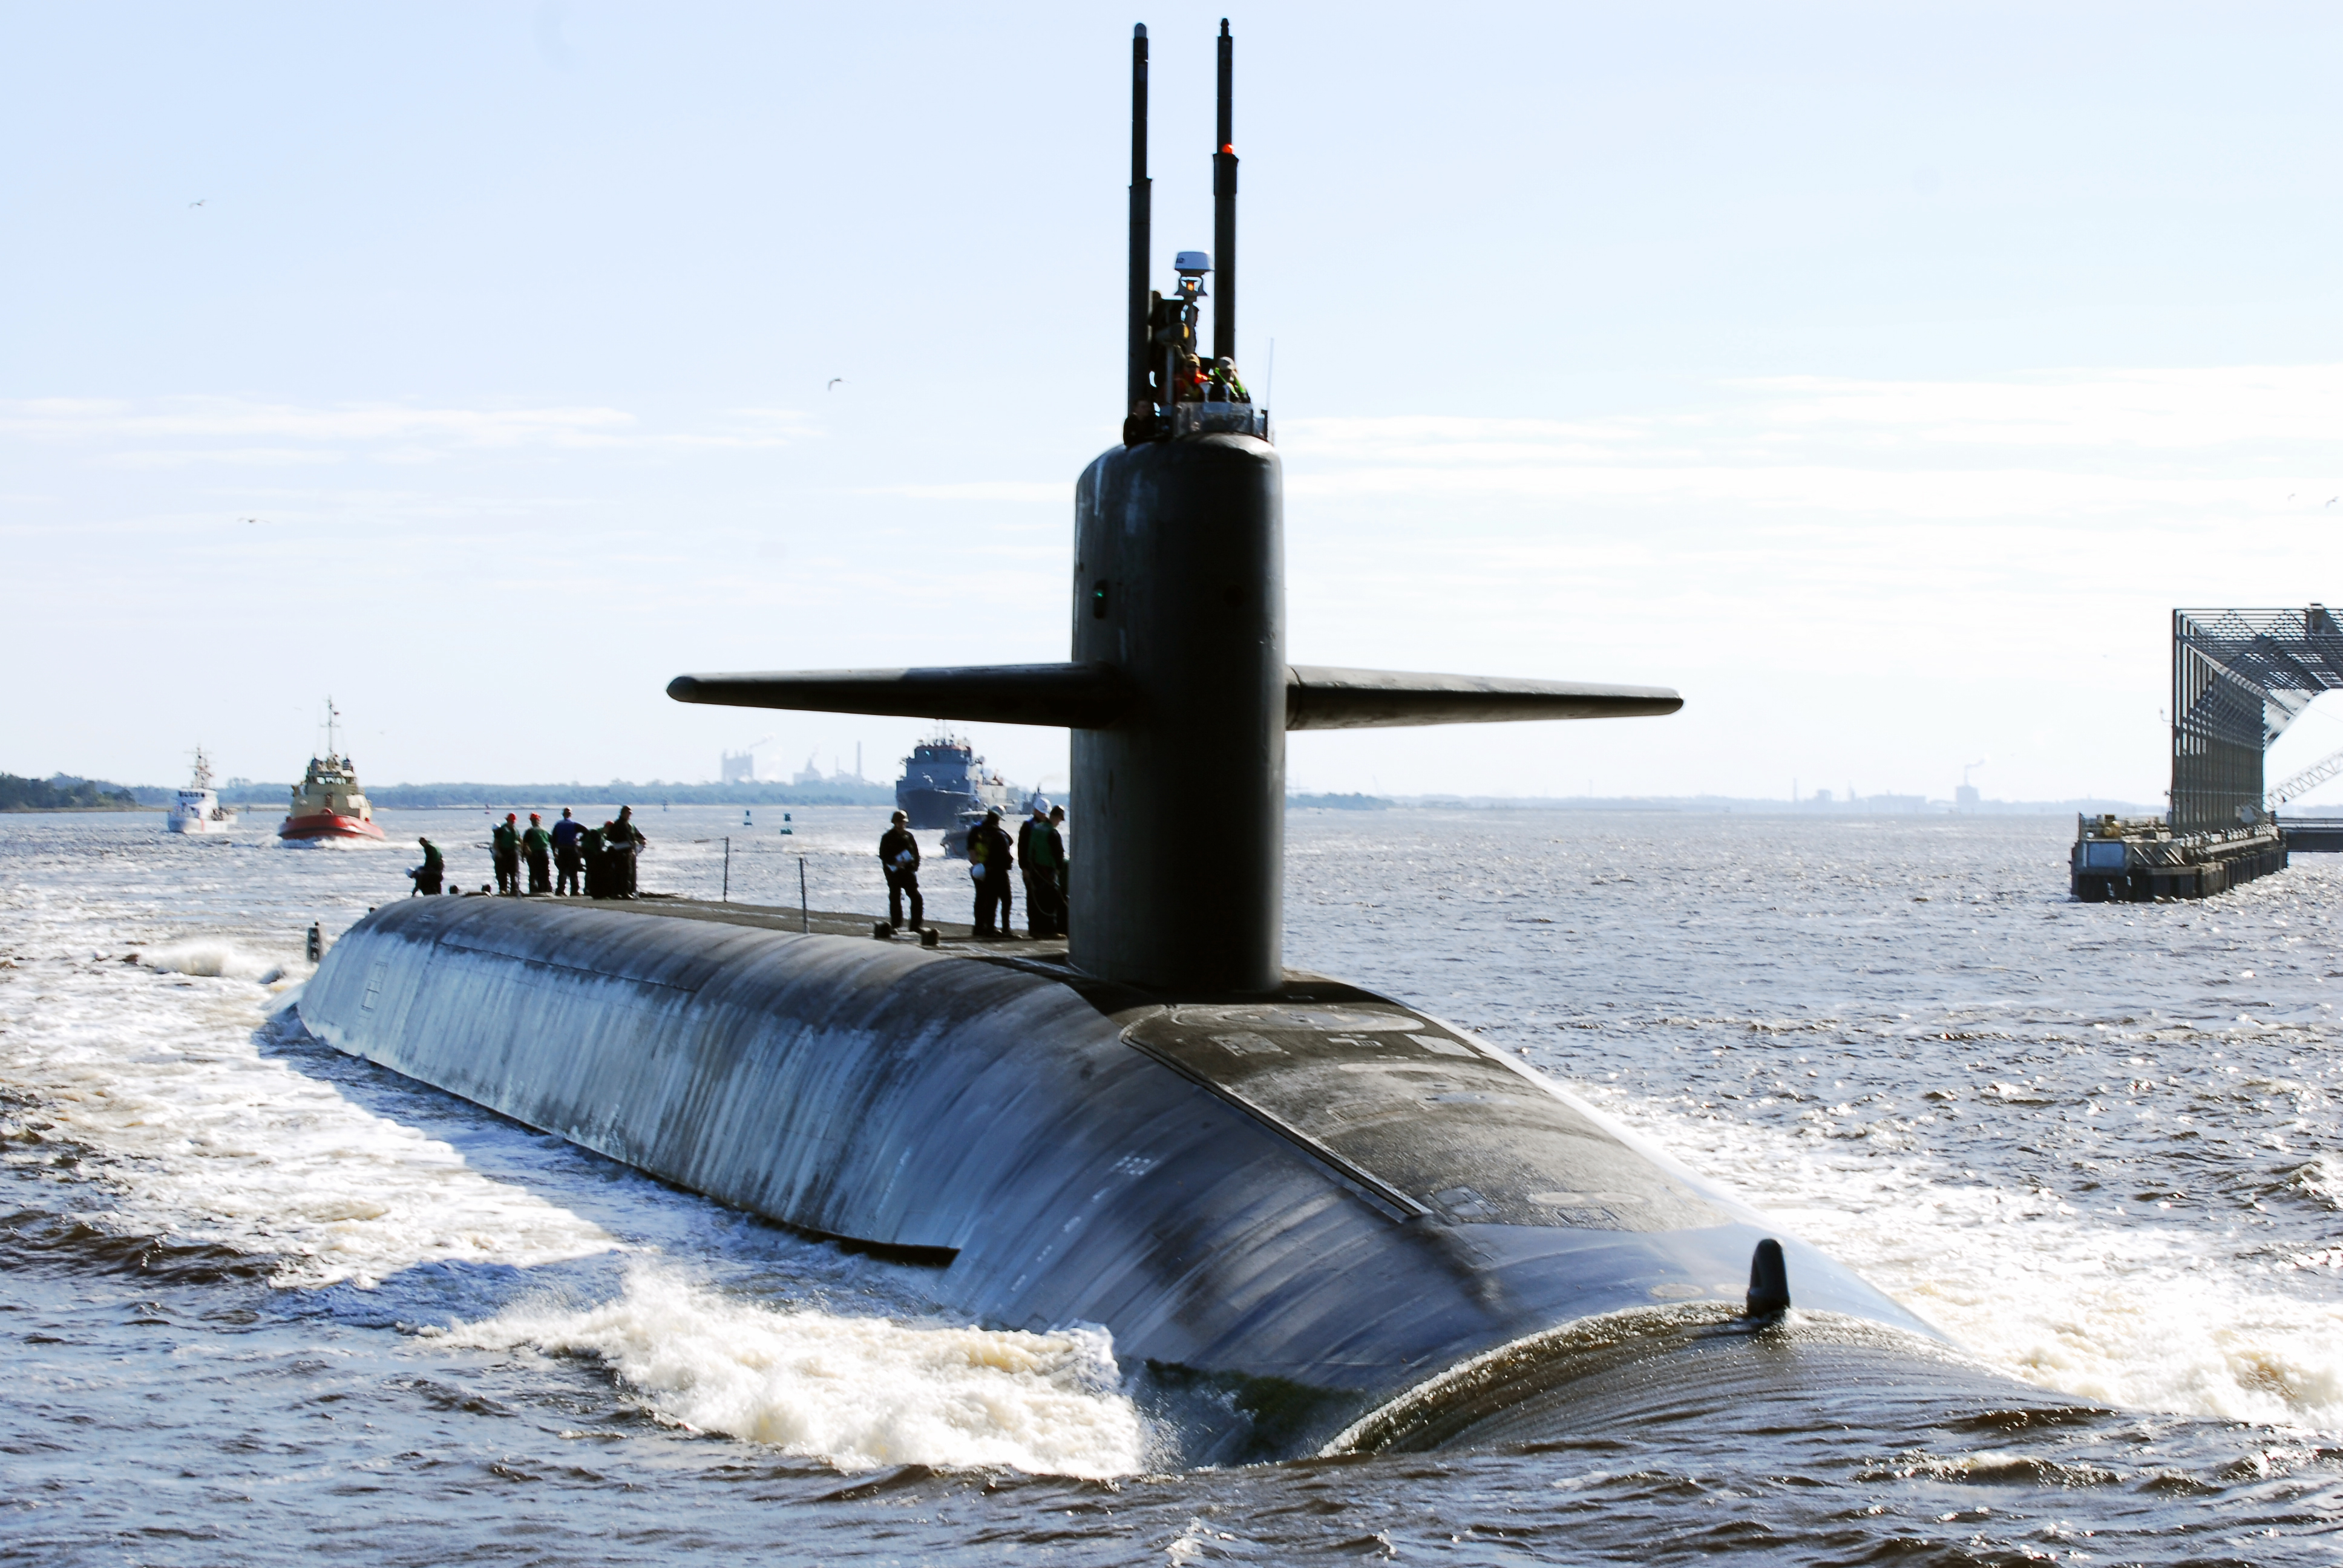 Американская стратегическая атомная подводная лодка USS Tennessee (SSBN 734), типа  Ohio, под управлением «Золотого» экипажа 11 января 2019 года возвратилась в свою ВМБ Kings Bay, шт. Джорджия, успешно завершив очередное плановое патрулирование по программе стратегического ядерного сдерживания  (Tennessee  - одна из 5 стратегических атомных подводных лодок, базирующихся в Kings Bay  и способных нести до 20 МБР подводного базирования с разделяющимися боевыми блоками)